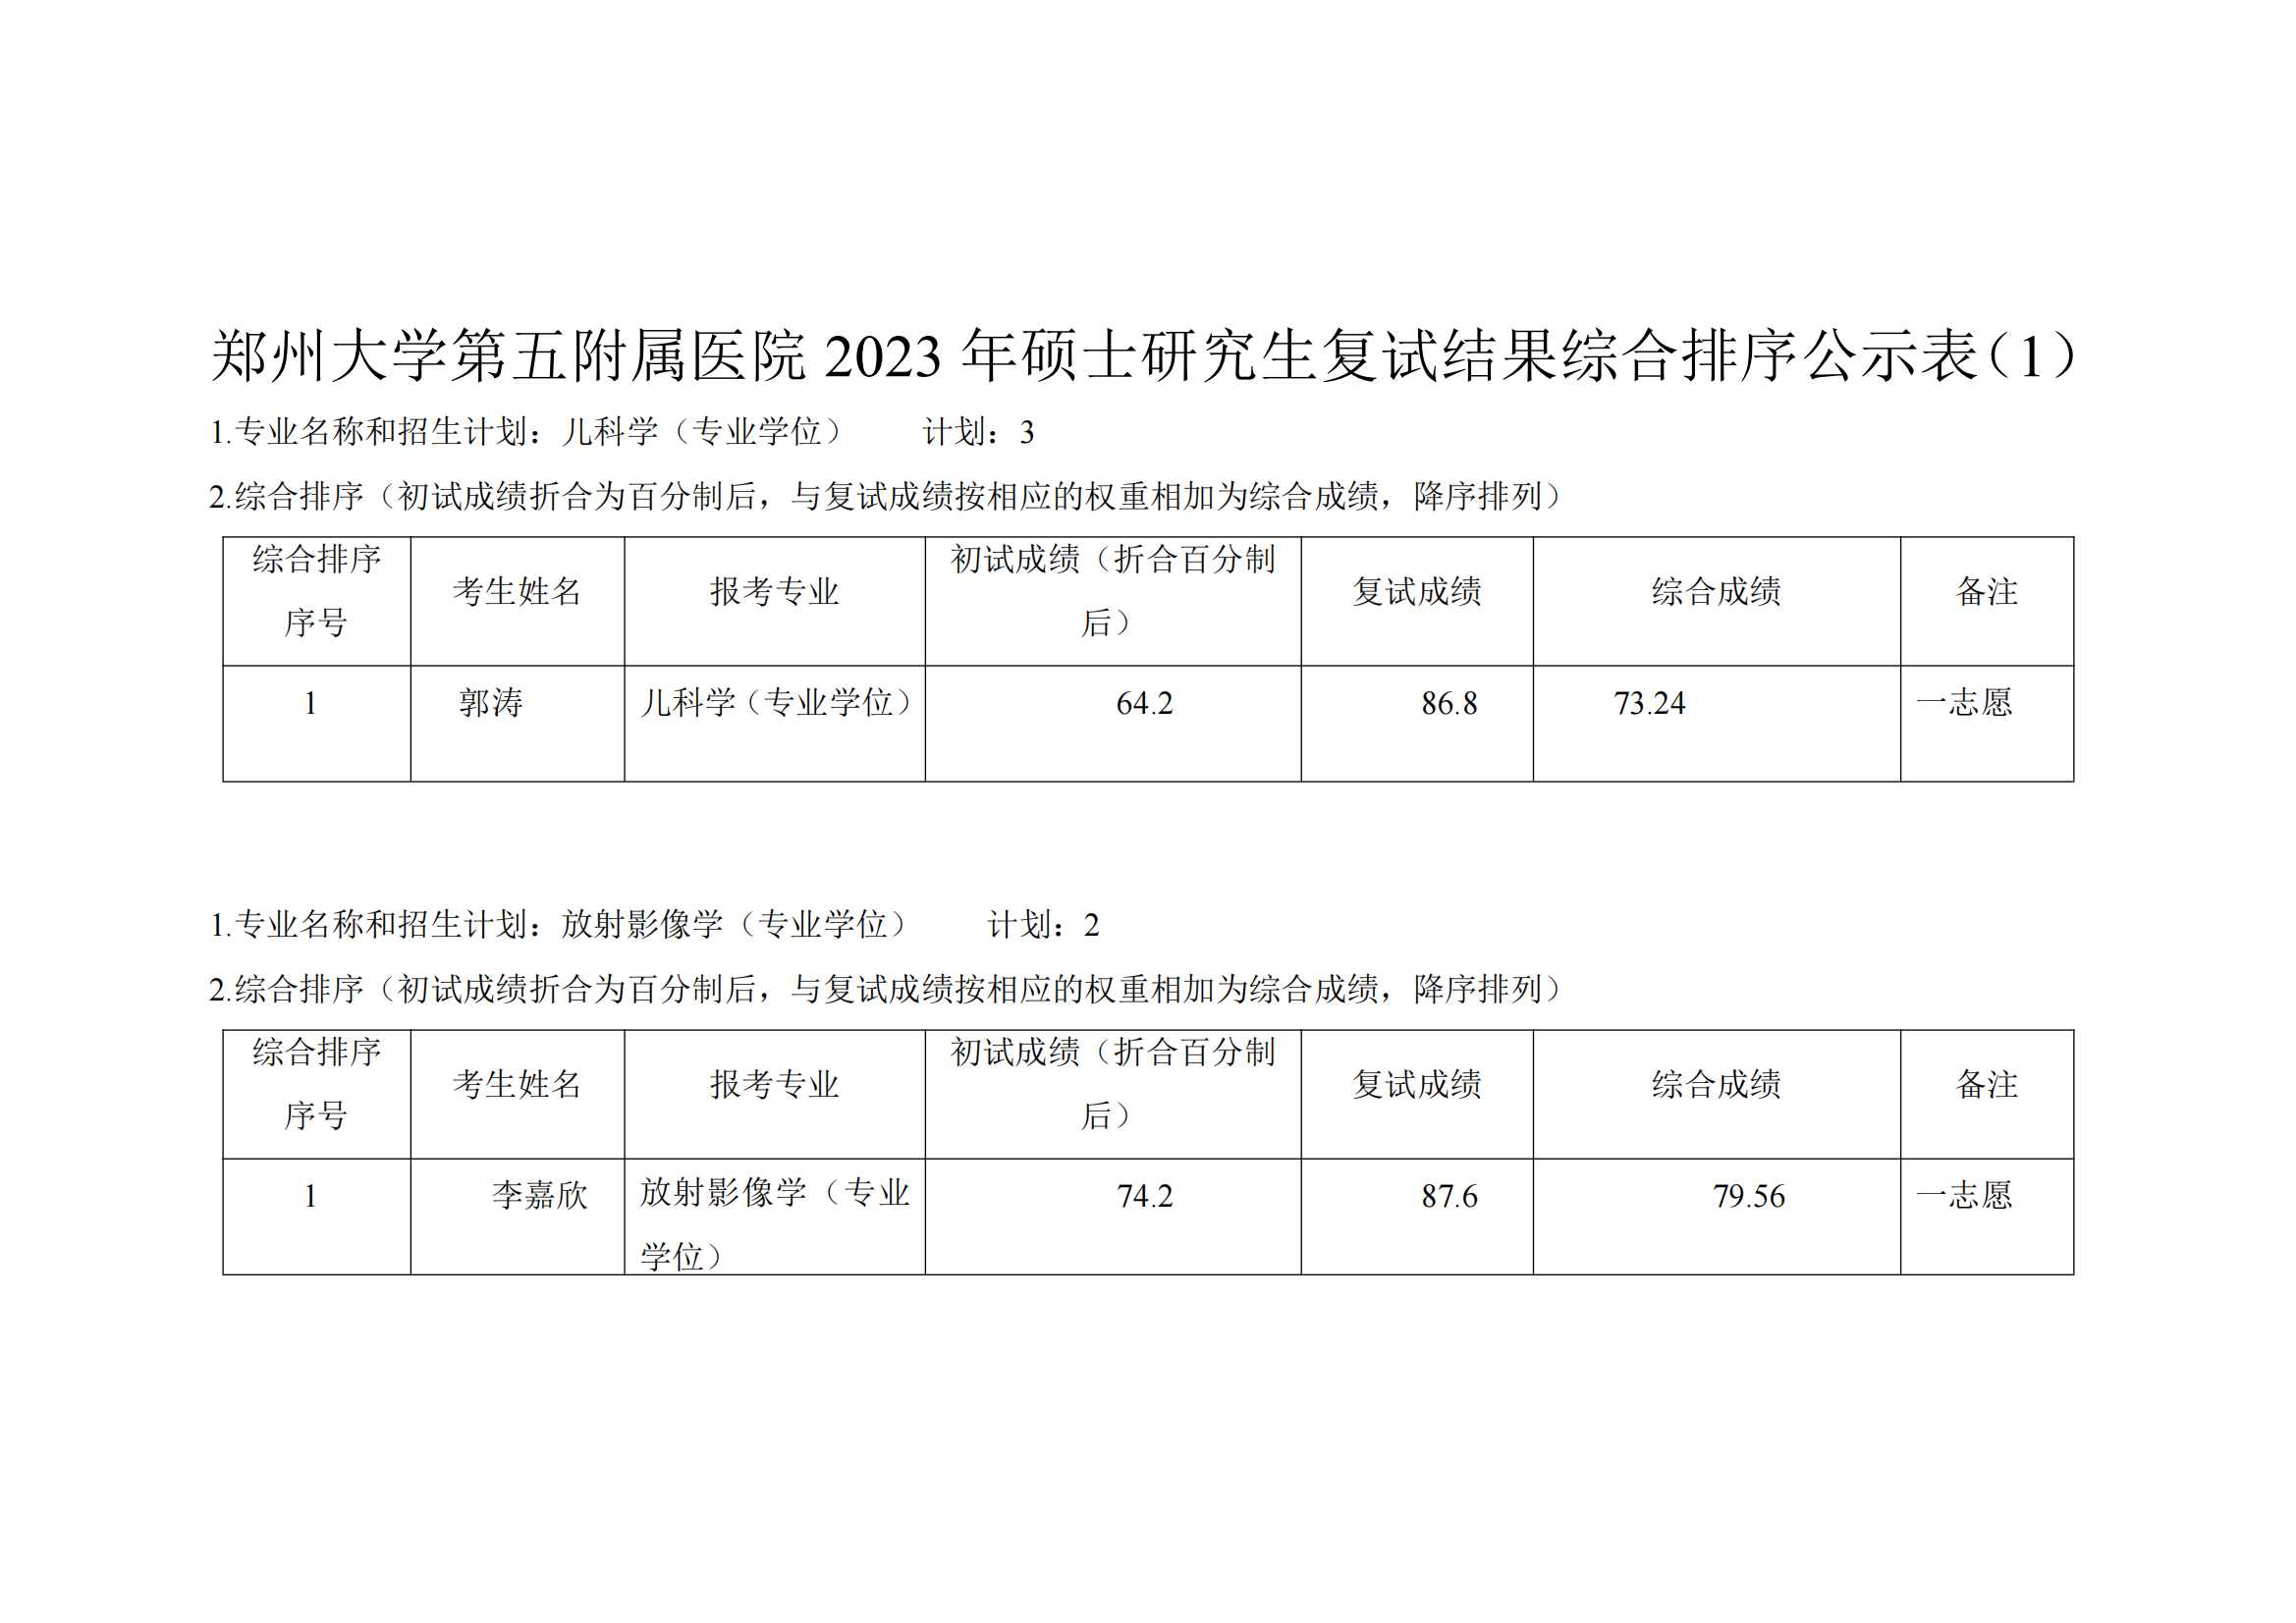 郑州大学第五附属医院 2023 年硕士研究生复试结果综合排序公示表（1）_00.png